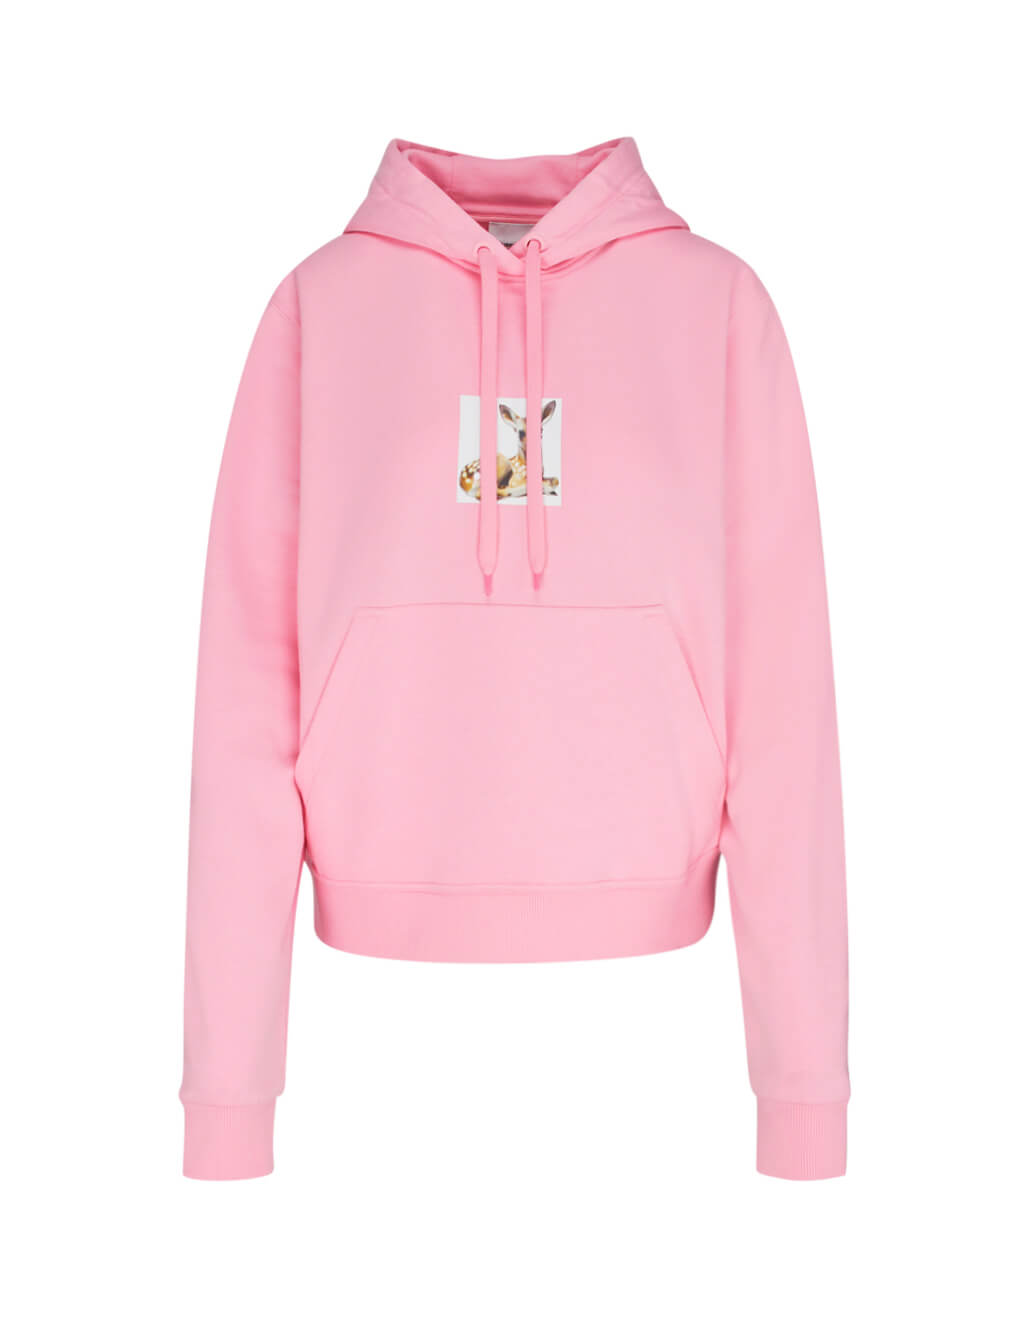 burberry hoodie womens pink